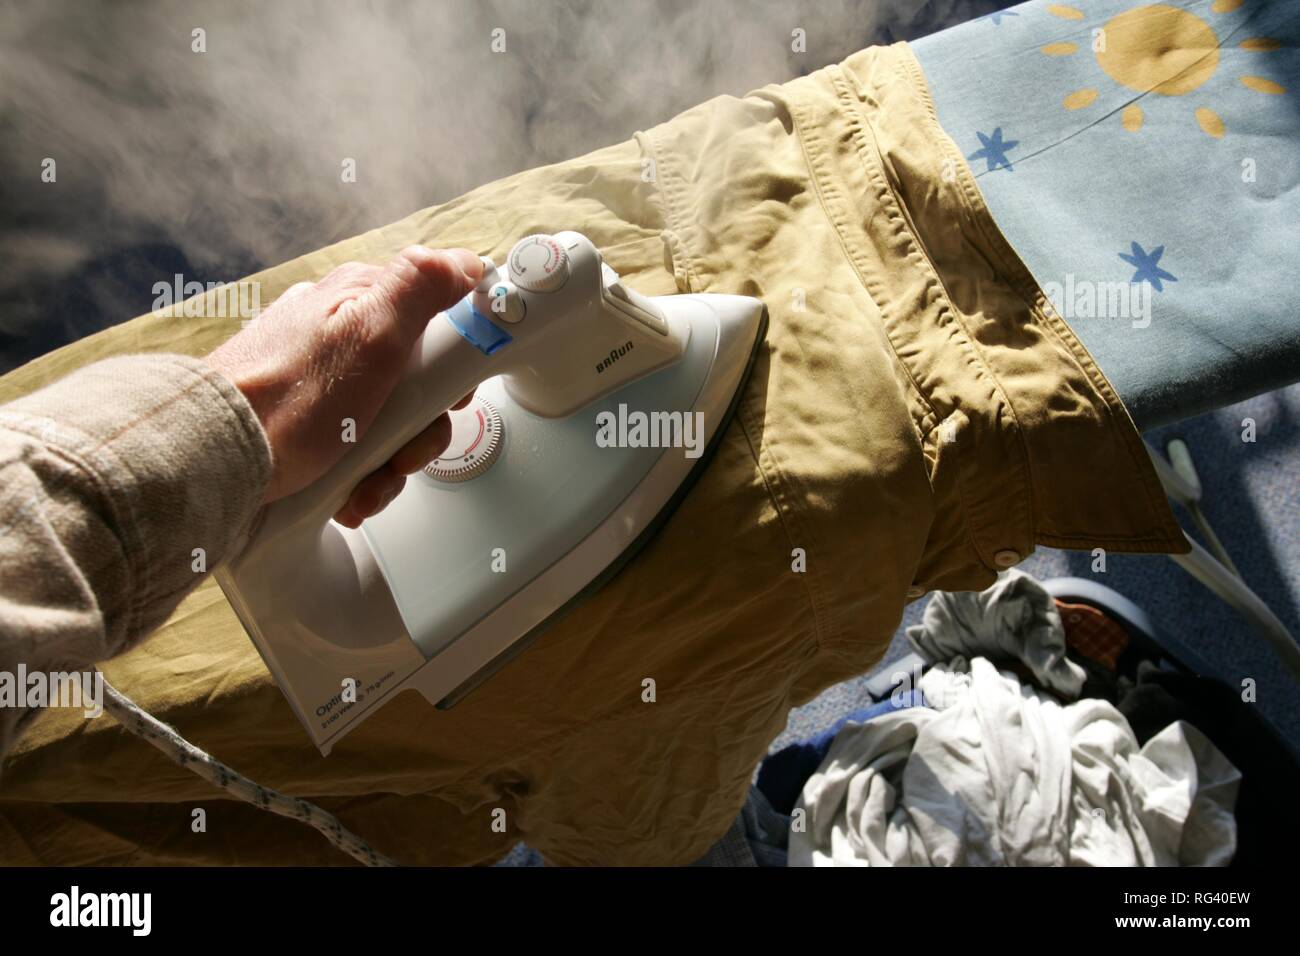 DEU, Allemagne : fer à repasser de la lessive à la maison. Fer à repasser à vapeur. Banque D'Images